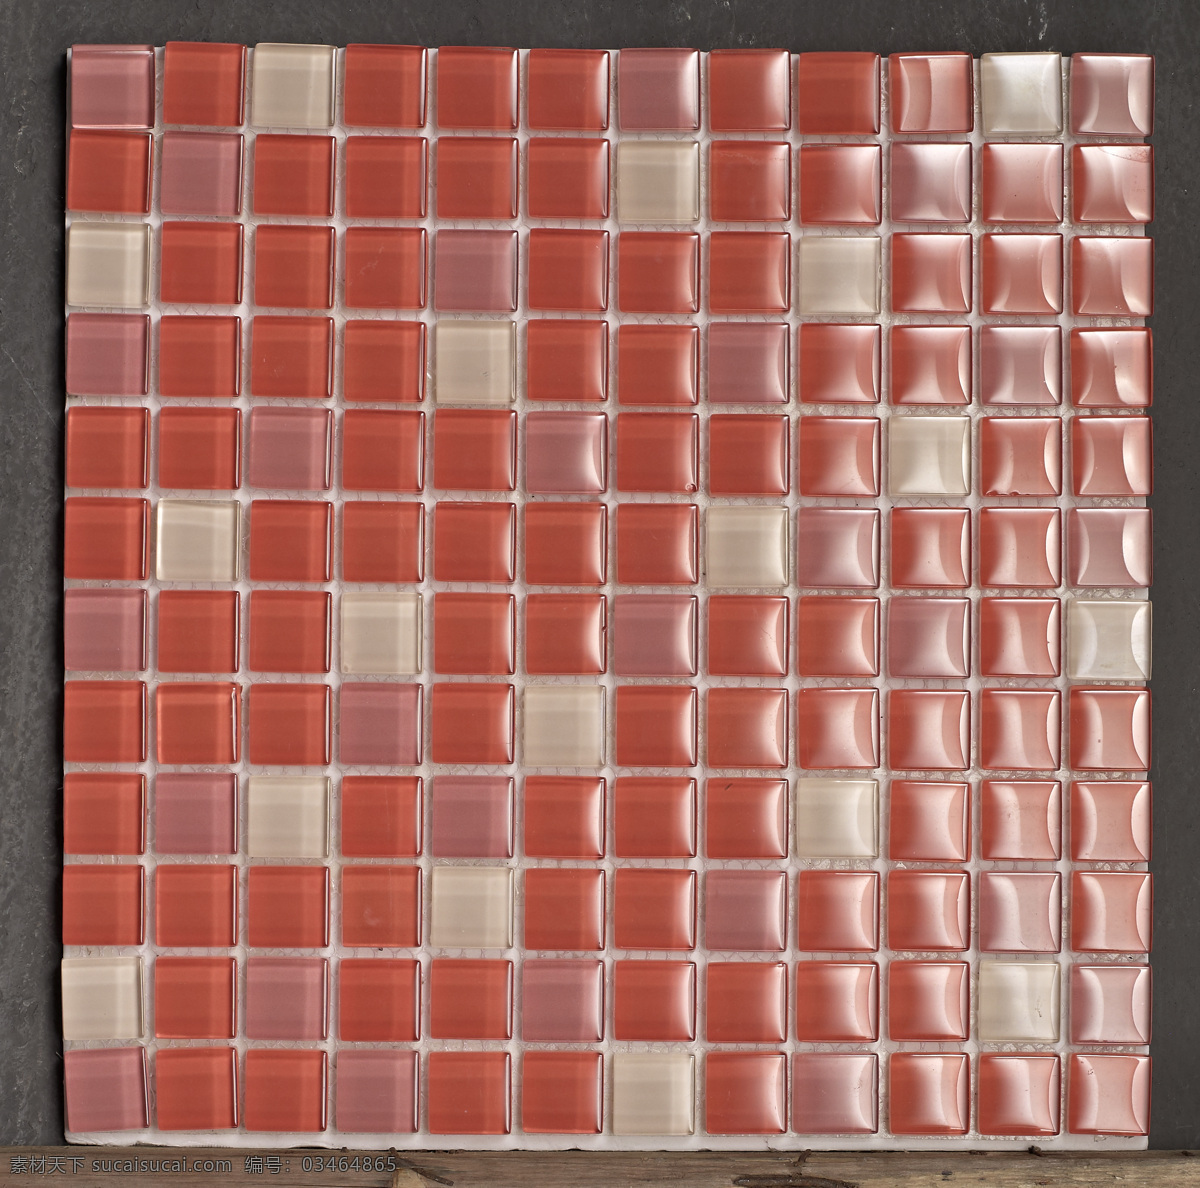 马赛克 瓷砖 建筑园林 拍照 拼图 陶瓷 浅红色 装饰素材 室内装饰用图